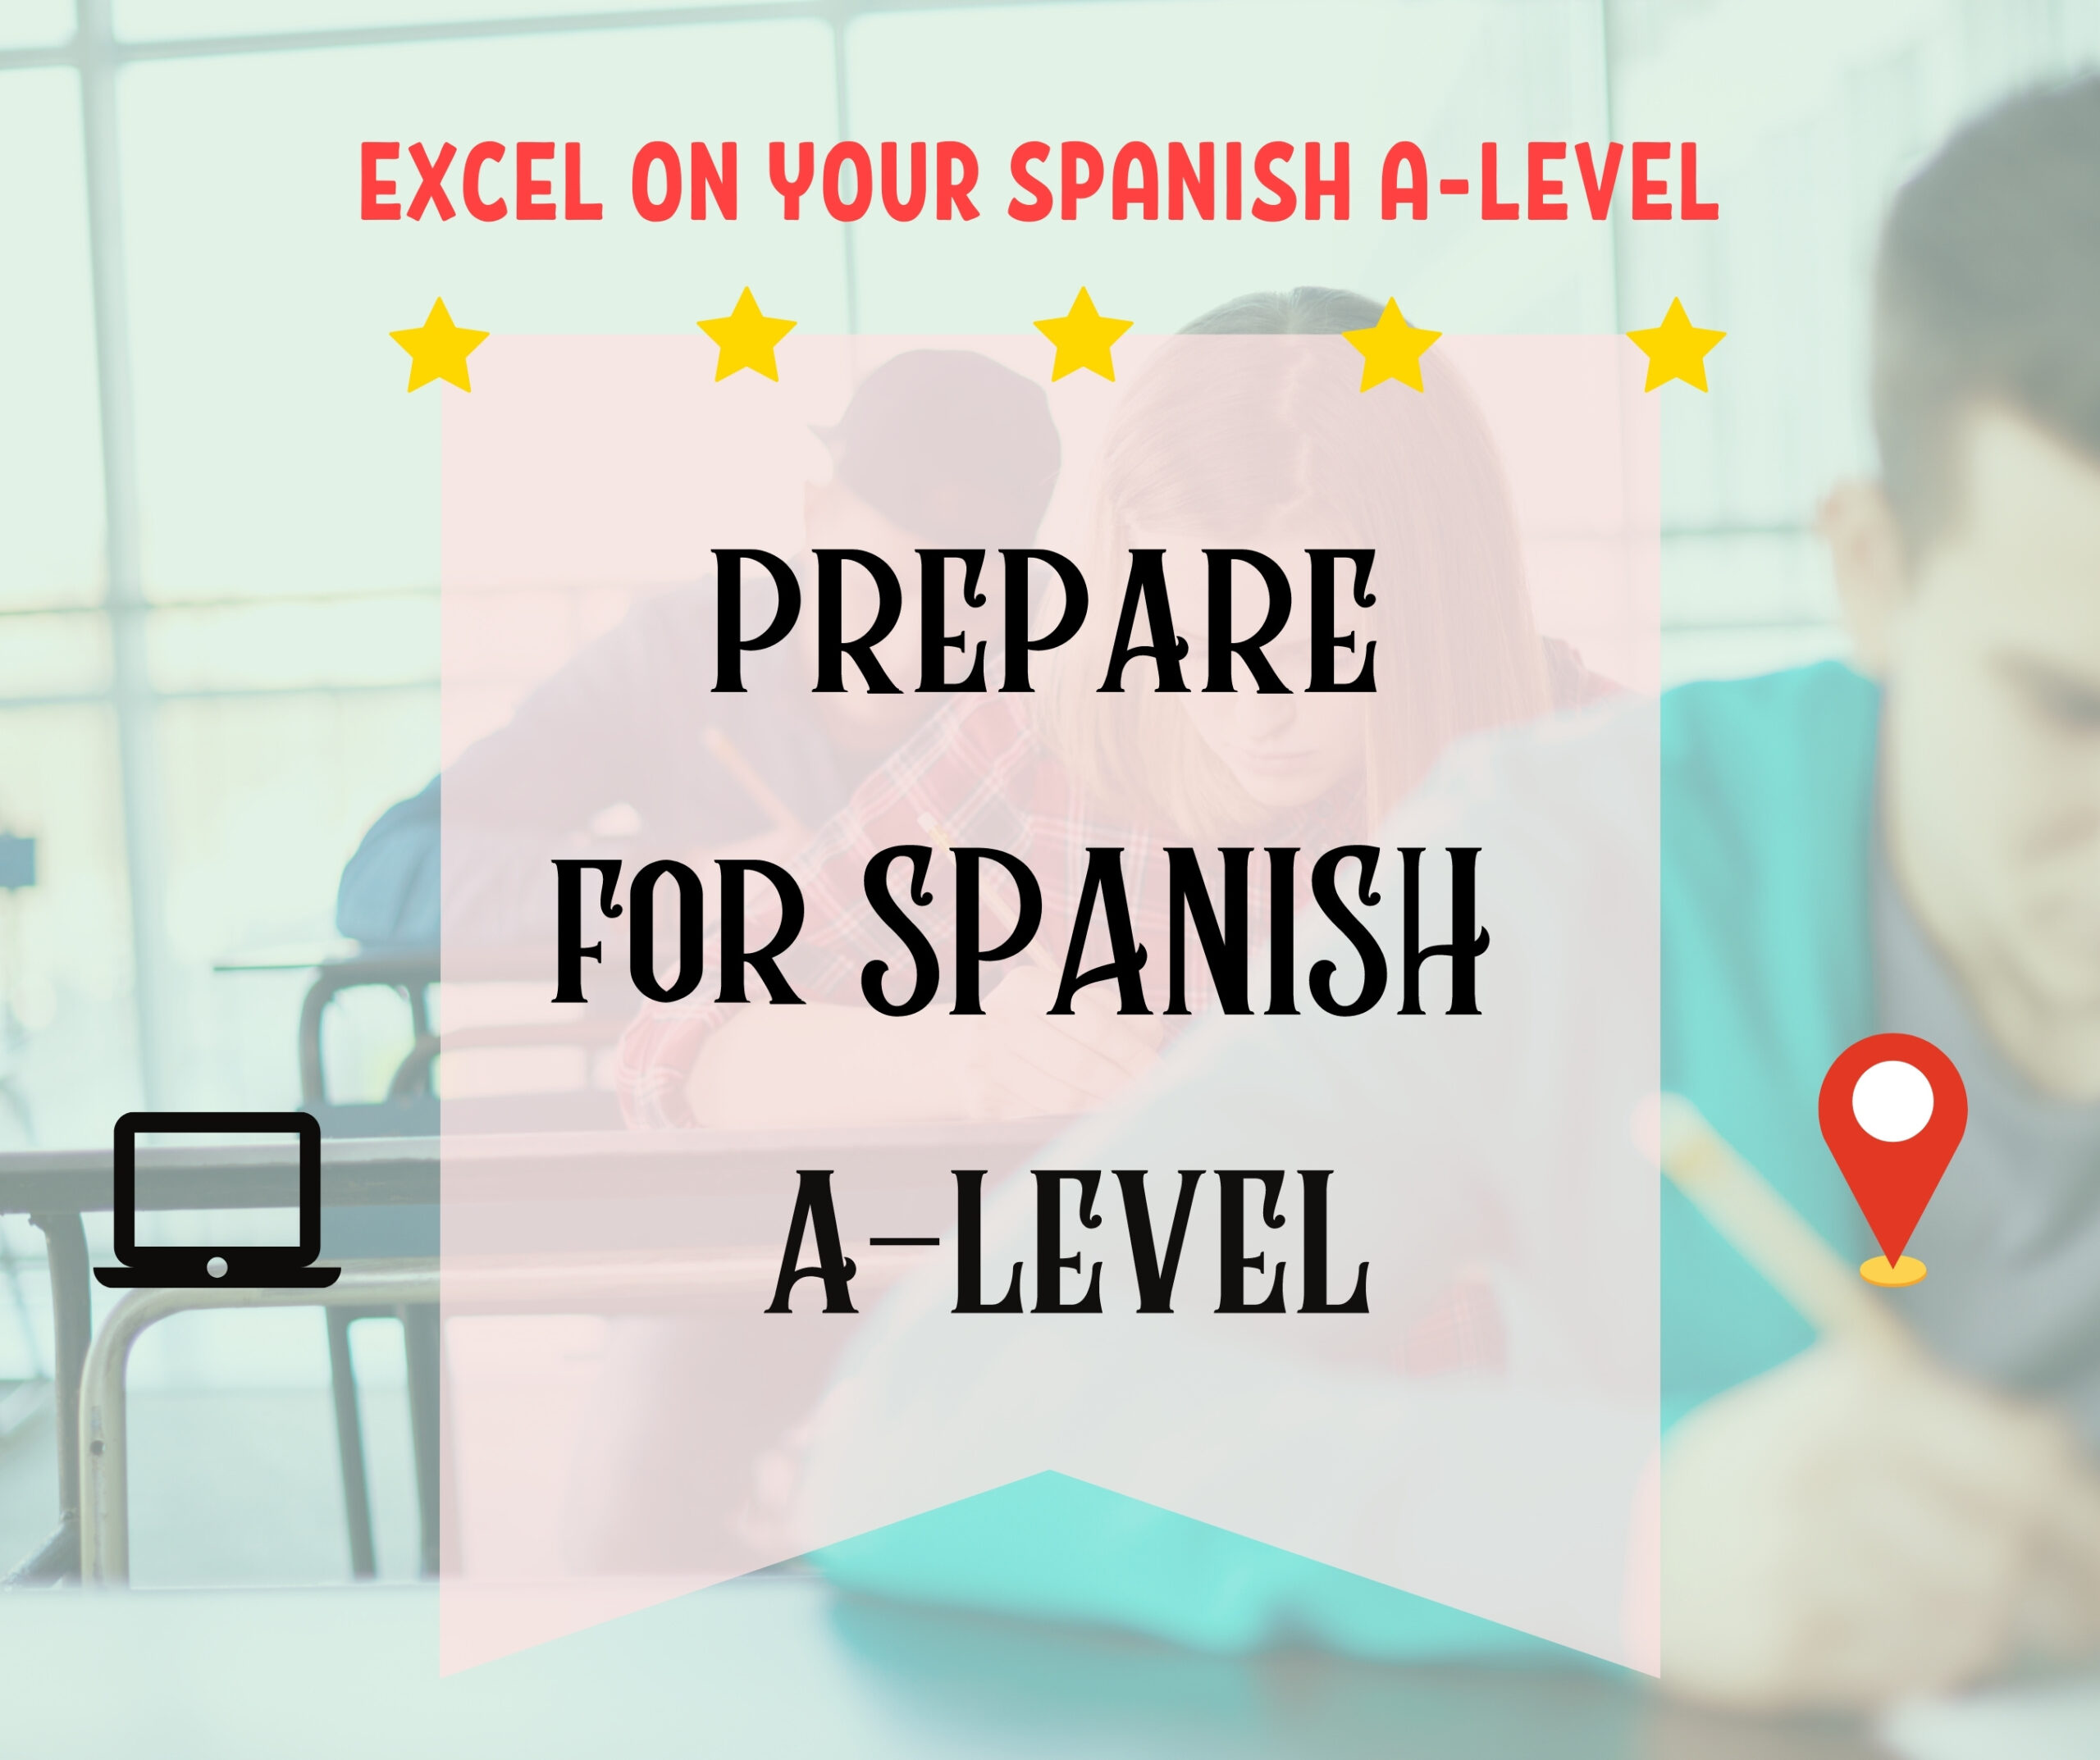 Prepare for Spanish A-Level